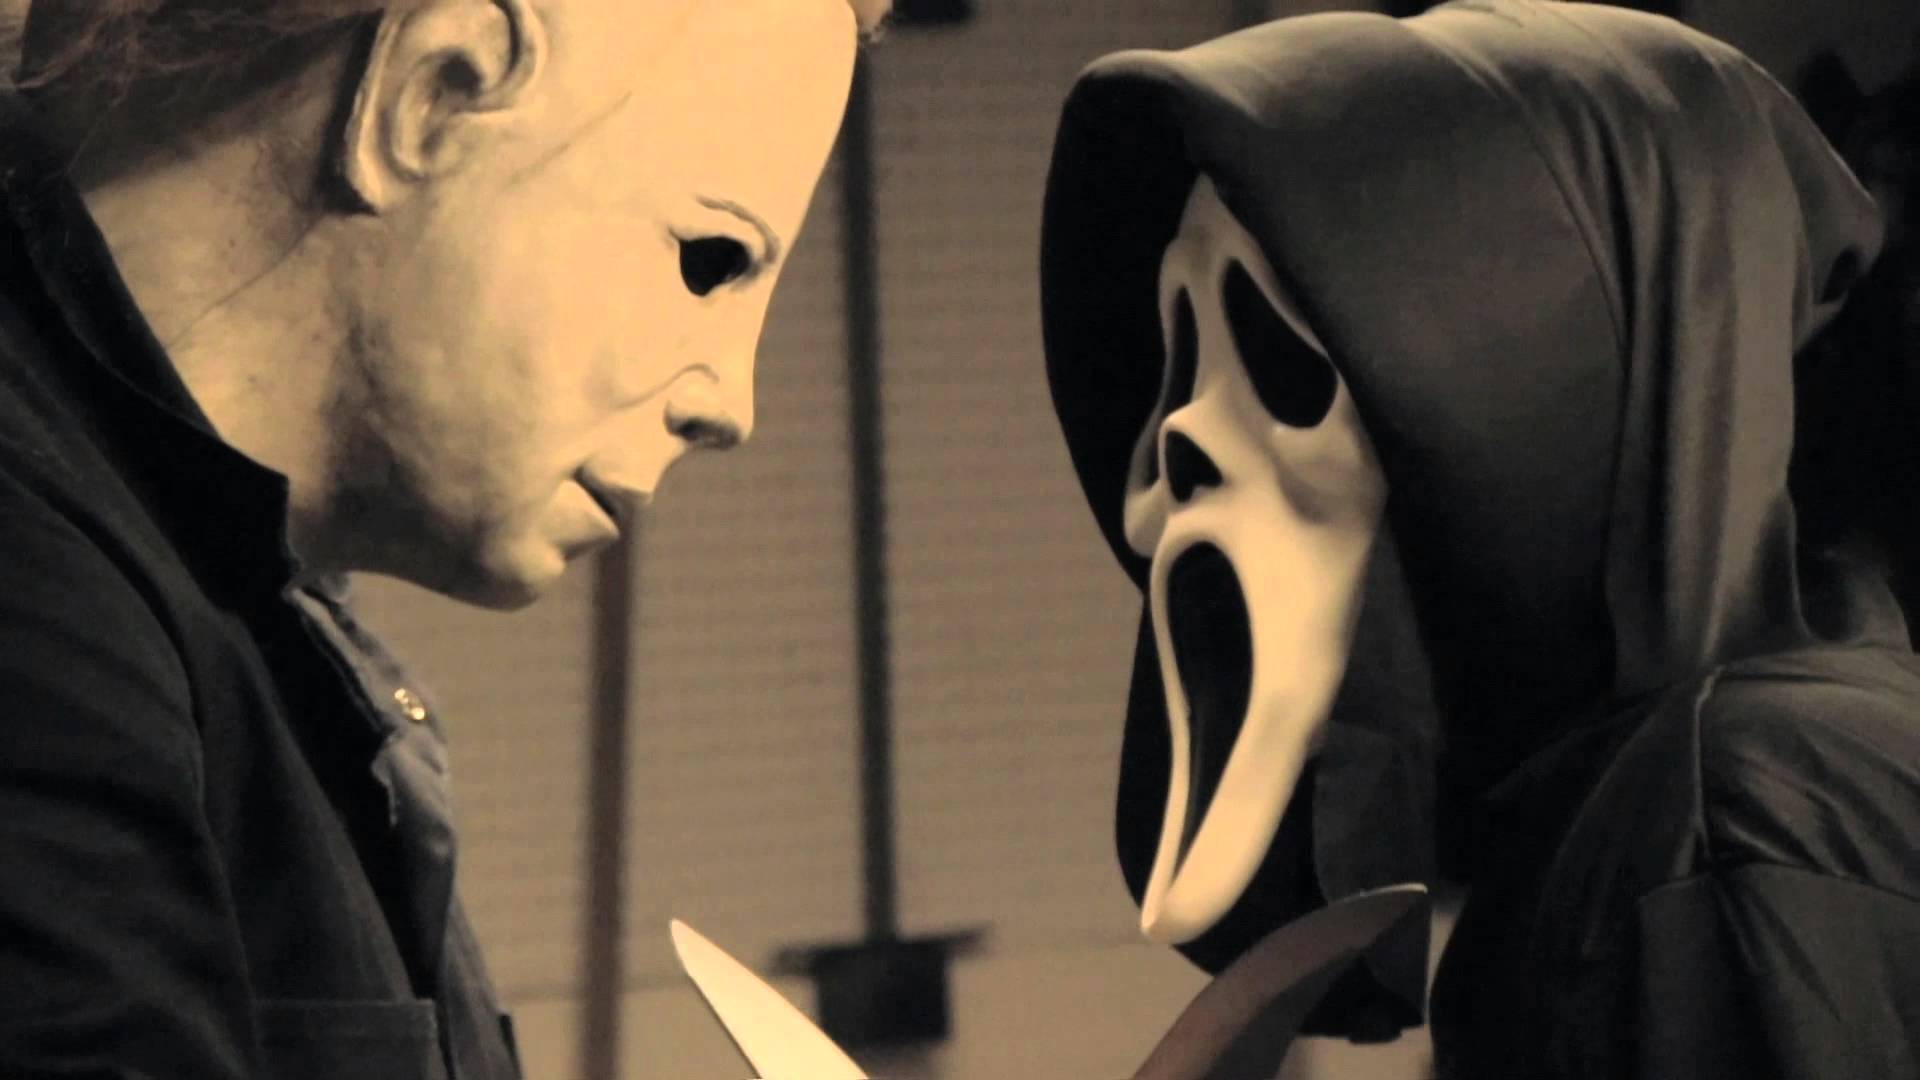 Michael Myers vs Ghostface. Fan Film